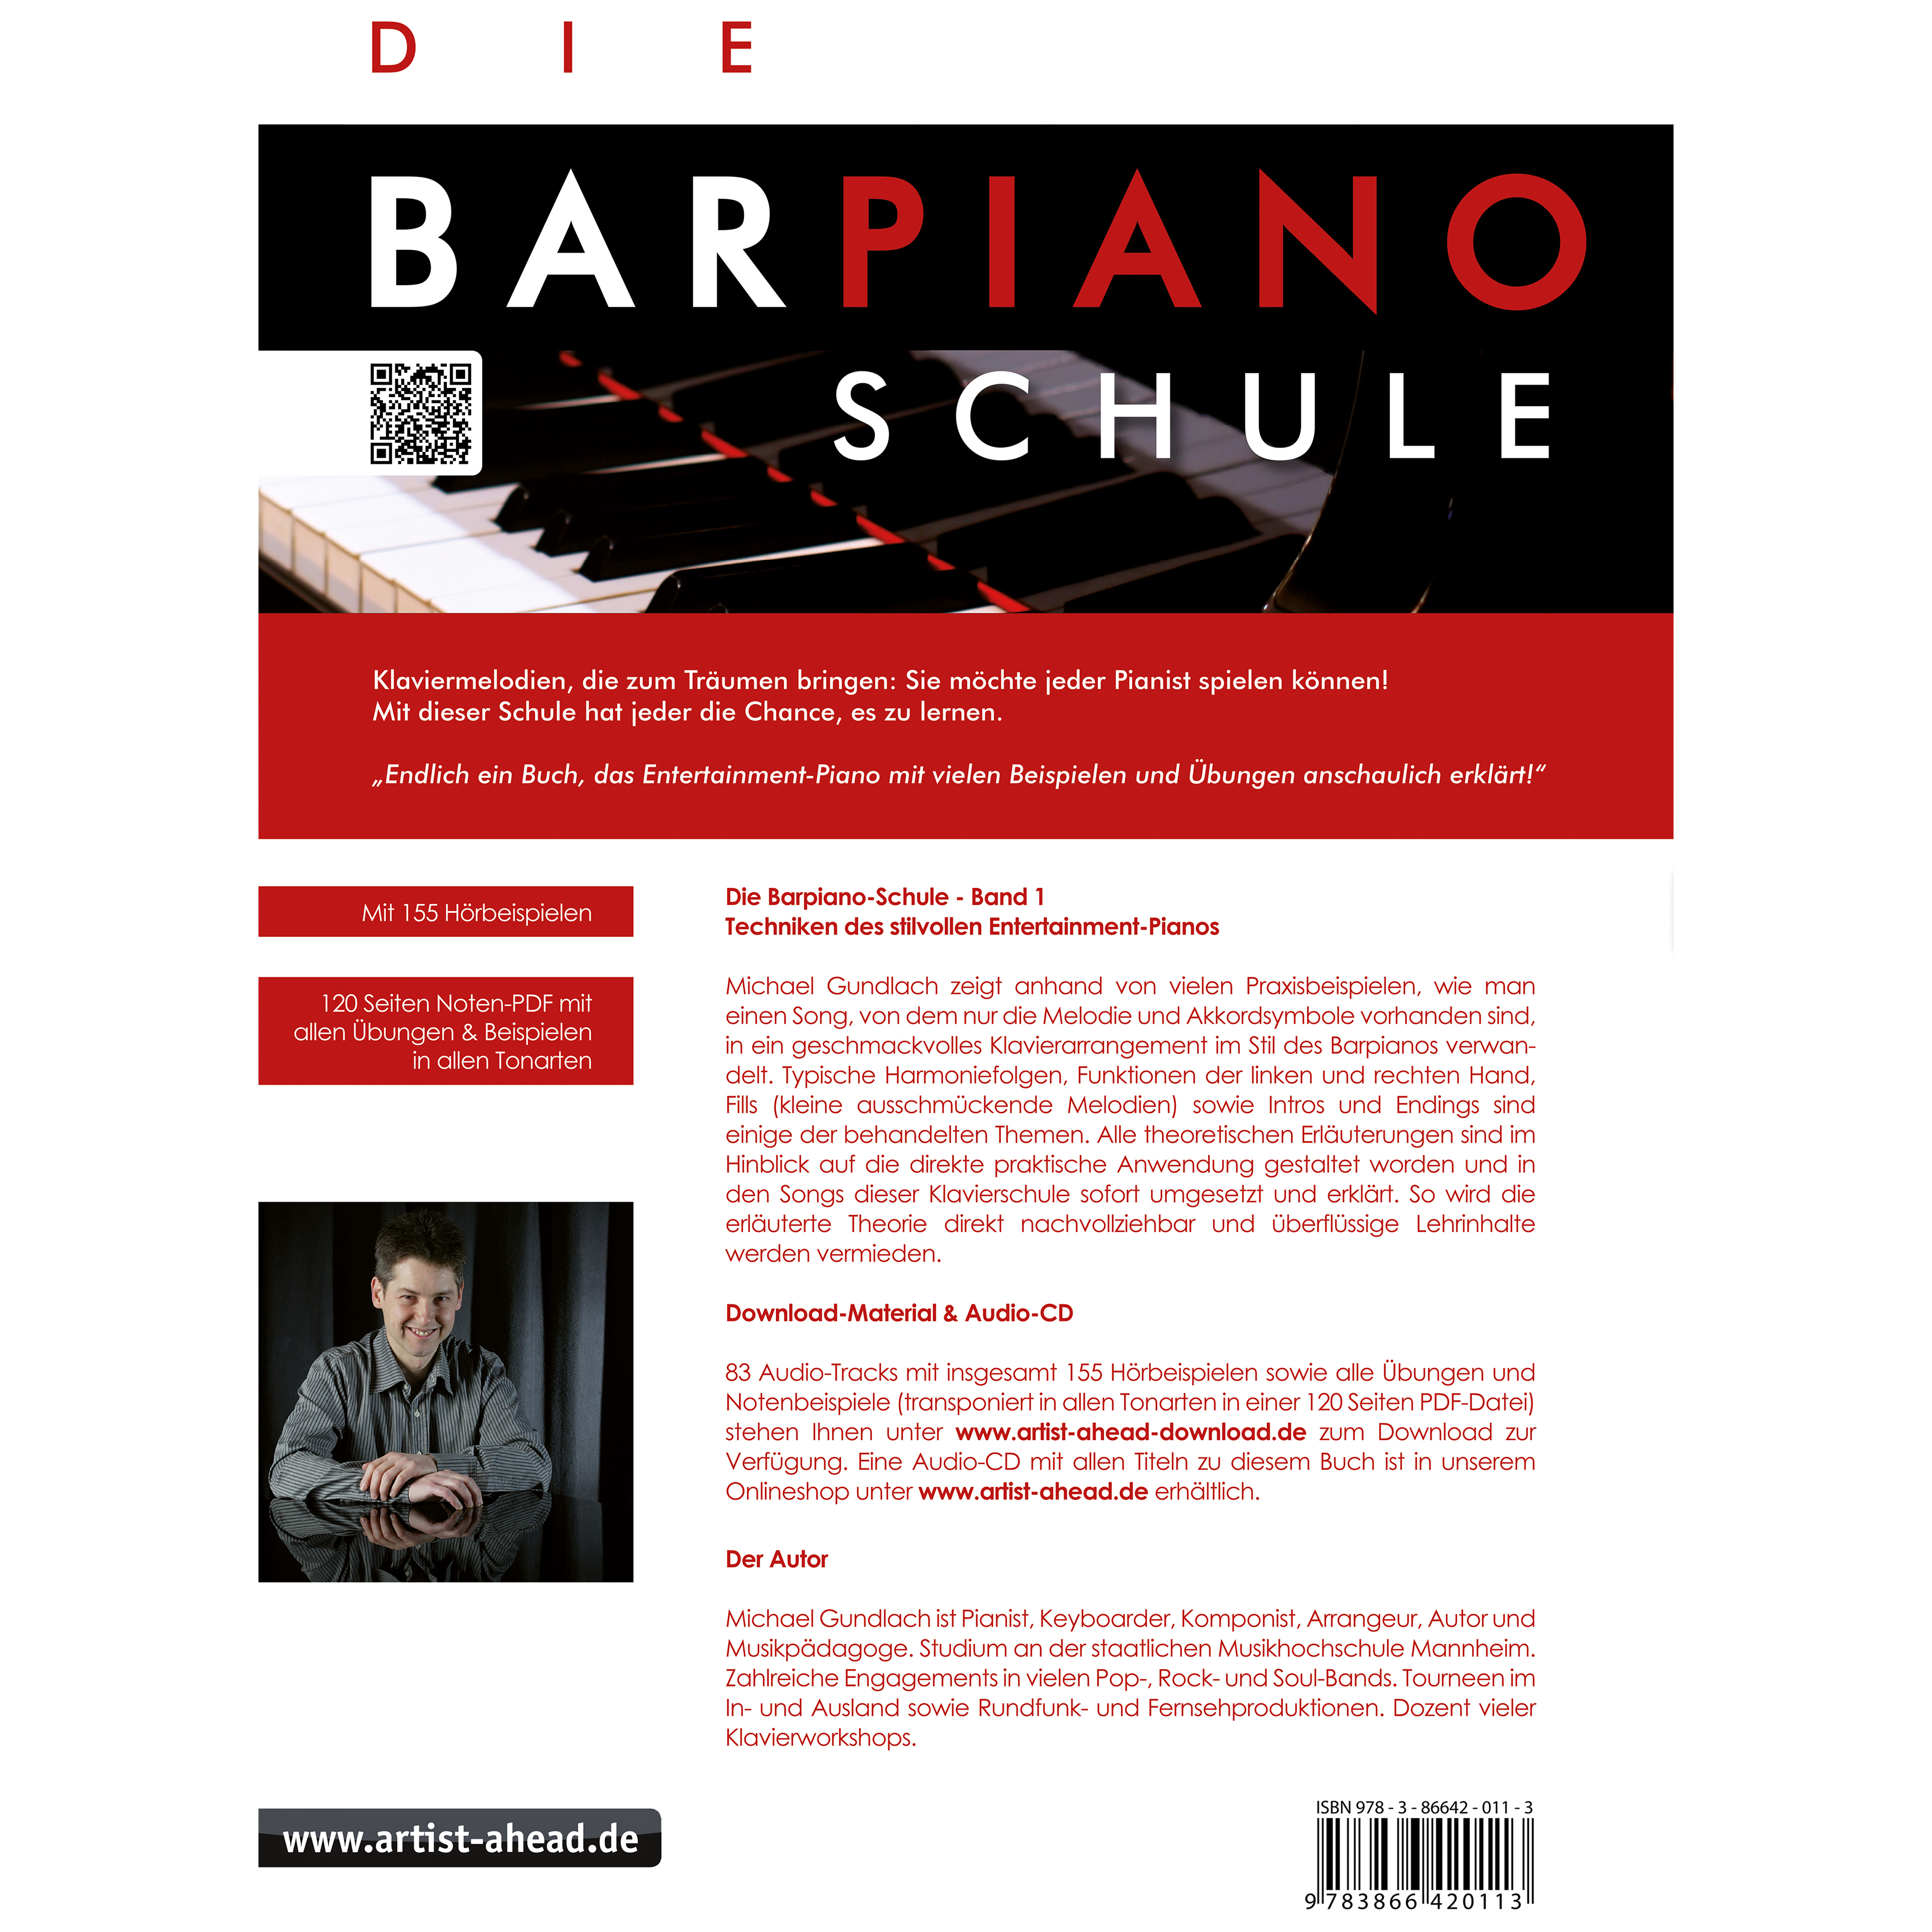 Artist Ahead Die Barpiano-Schule - Band 1 - Michael Gundlach 1